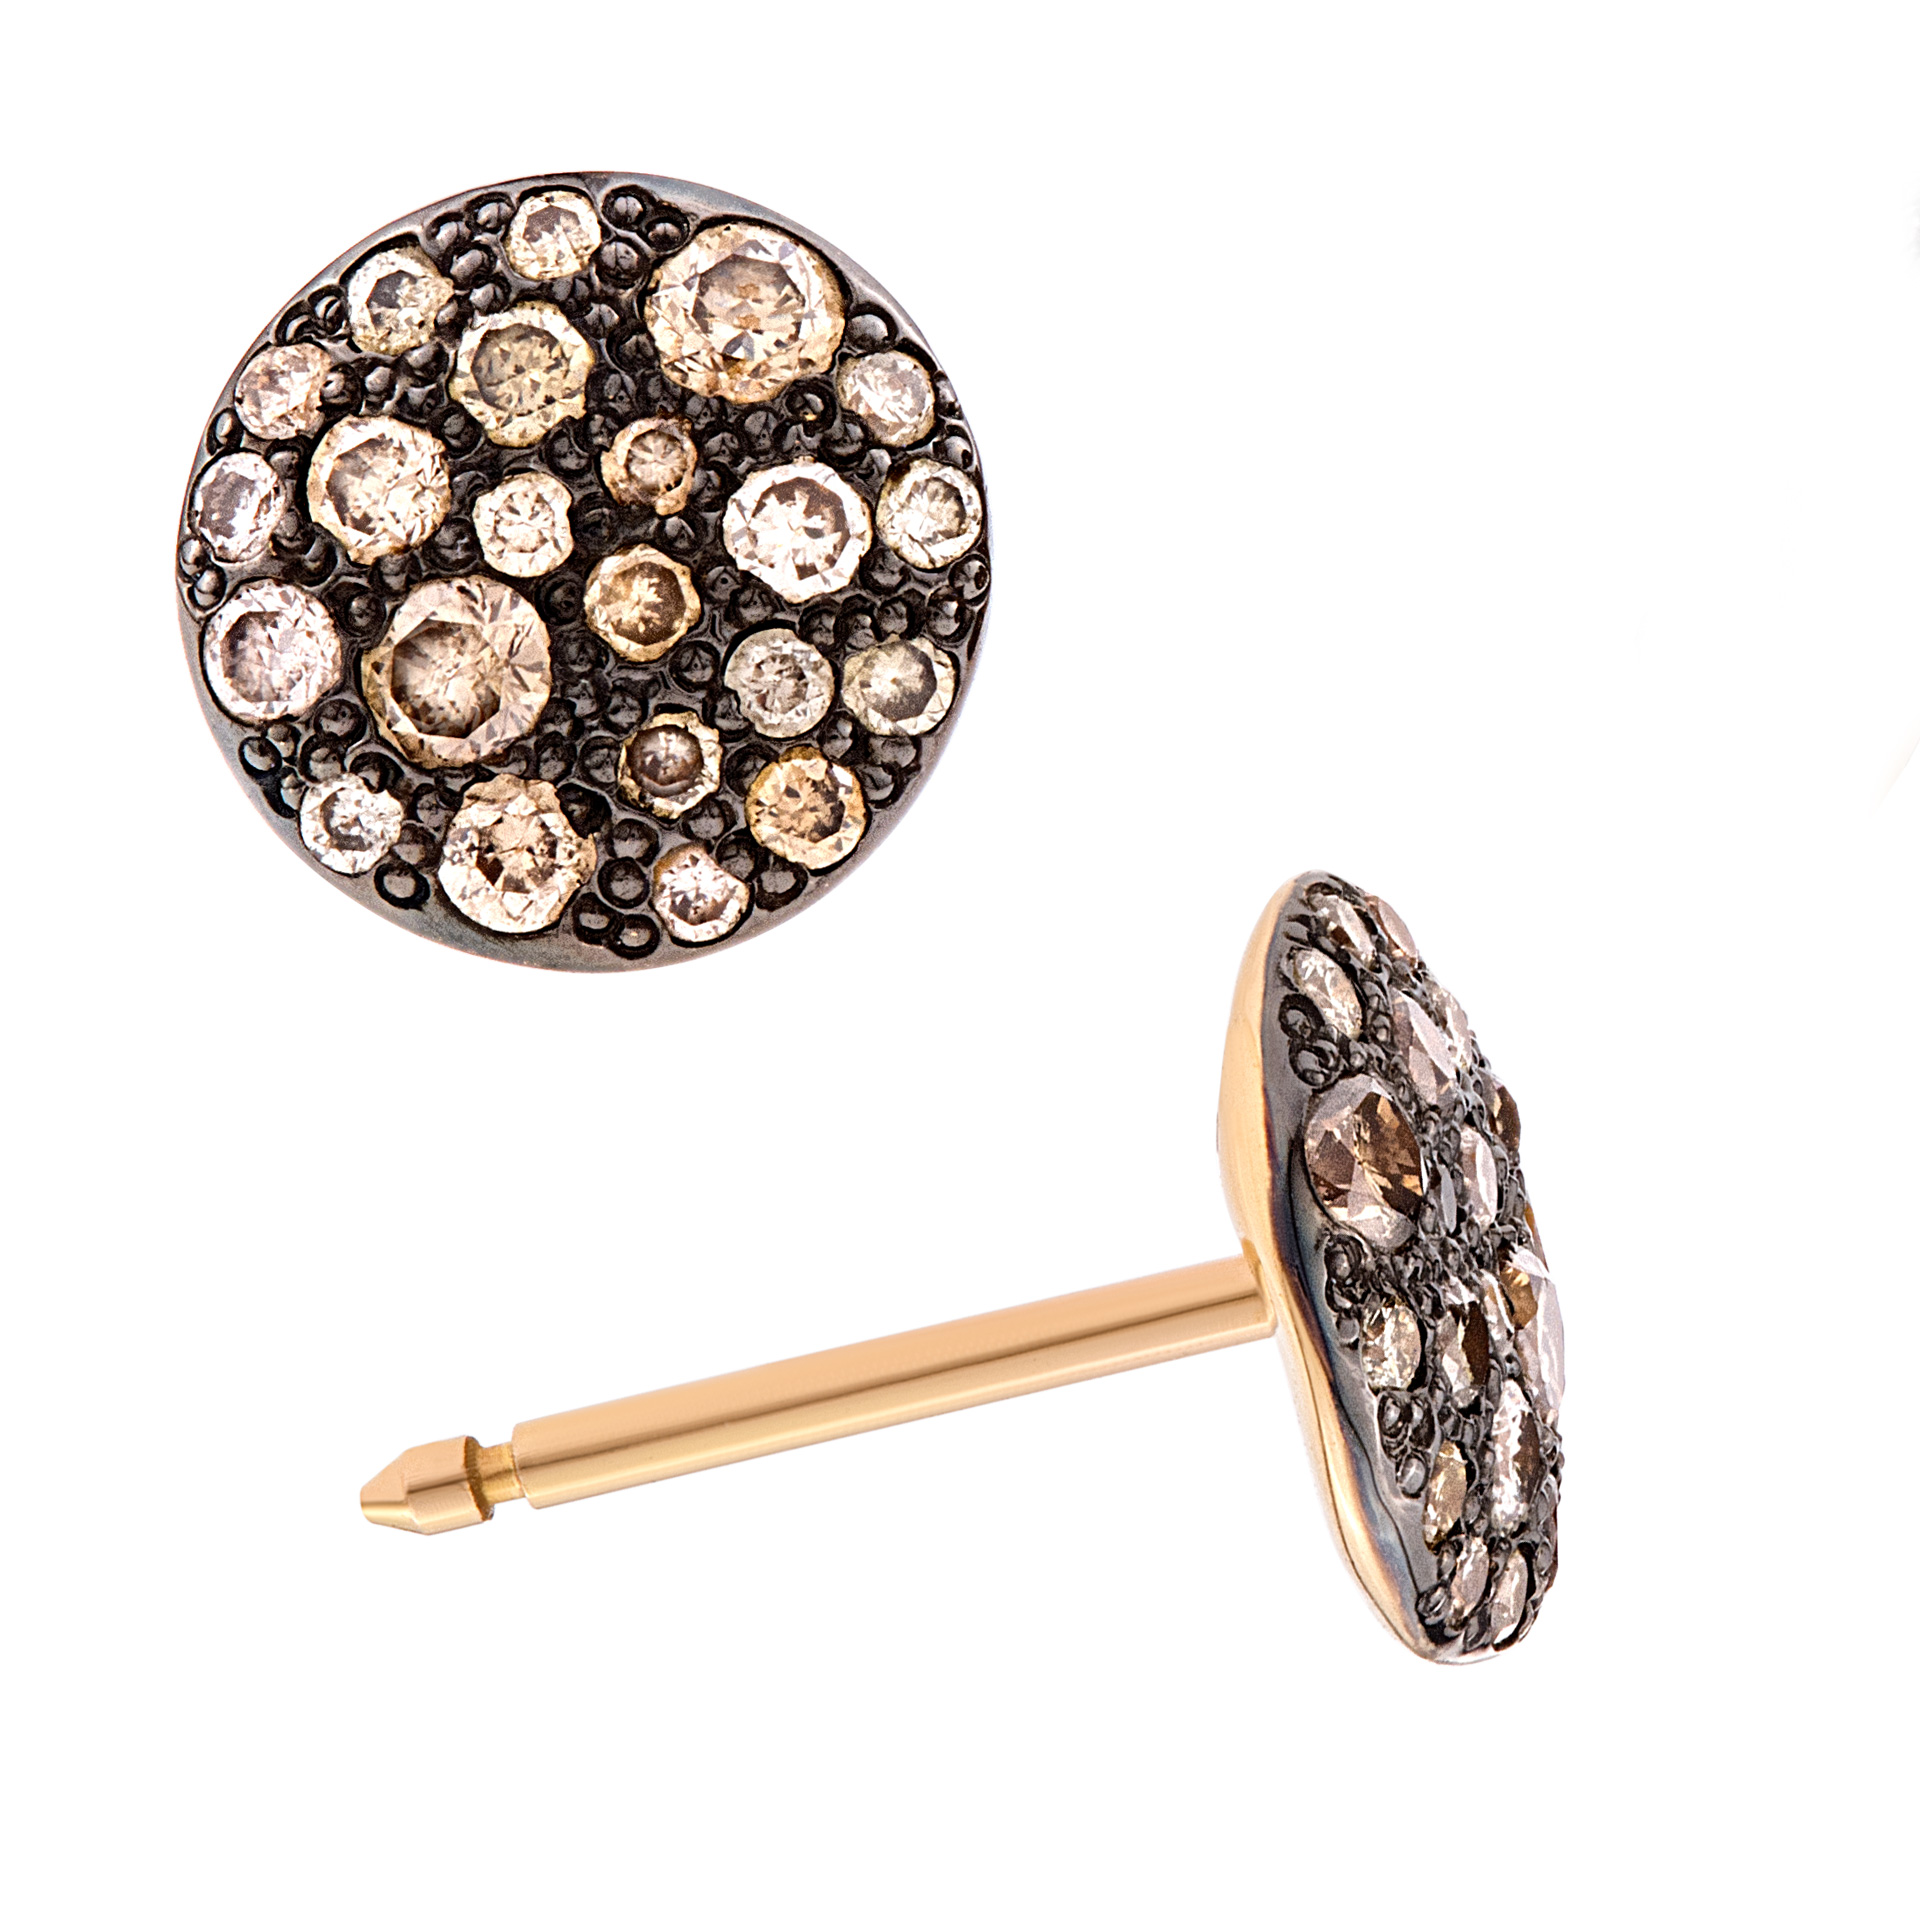 Pomellato Lucciole earrings with diamonds in 18k